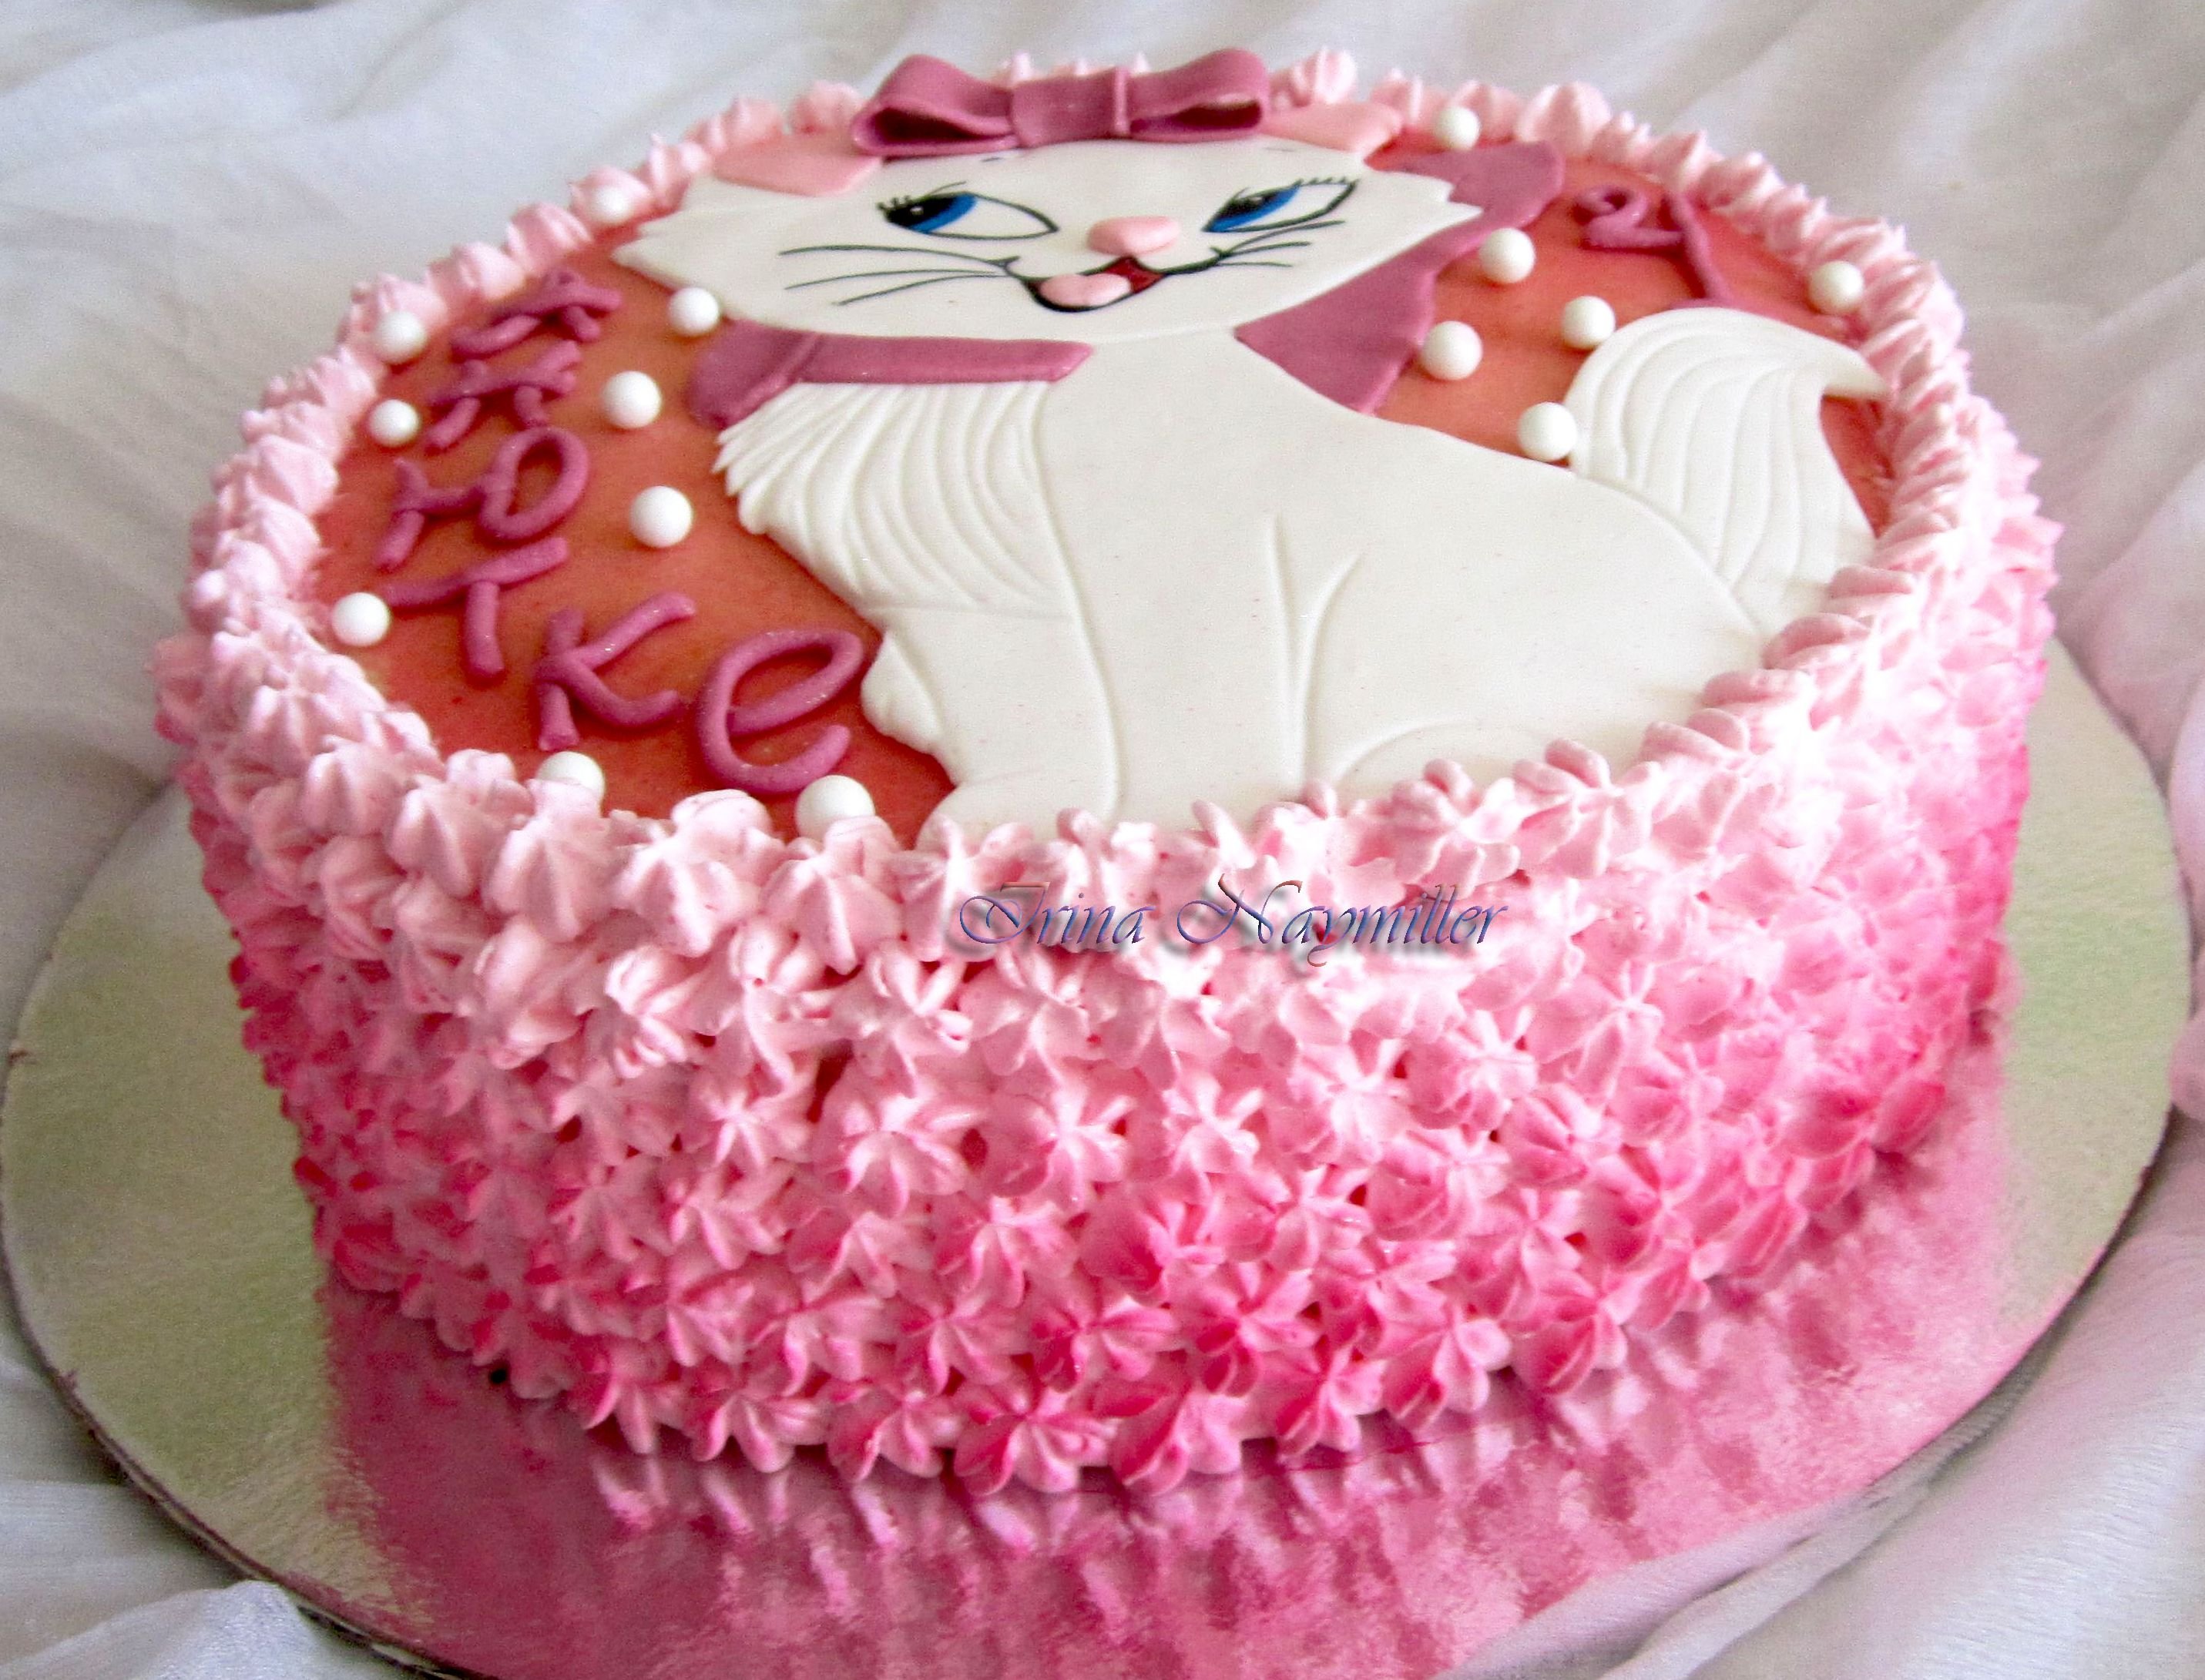 Оформление торта на день рождения девочке. Торт девочка. Кремовый торт для девочки. Торт для девочки из крема. Кремовые тортики для девочек.